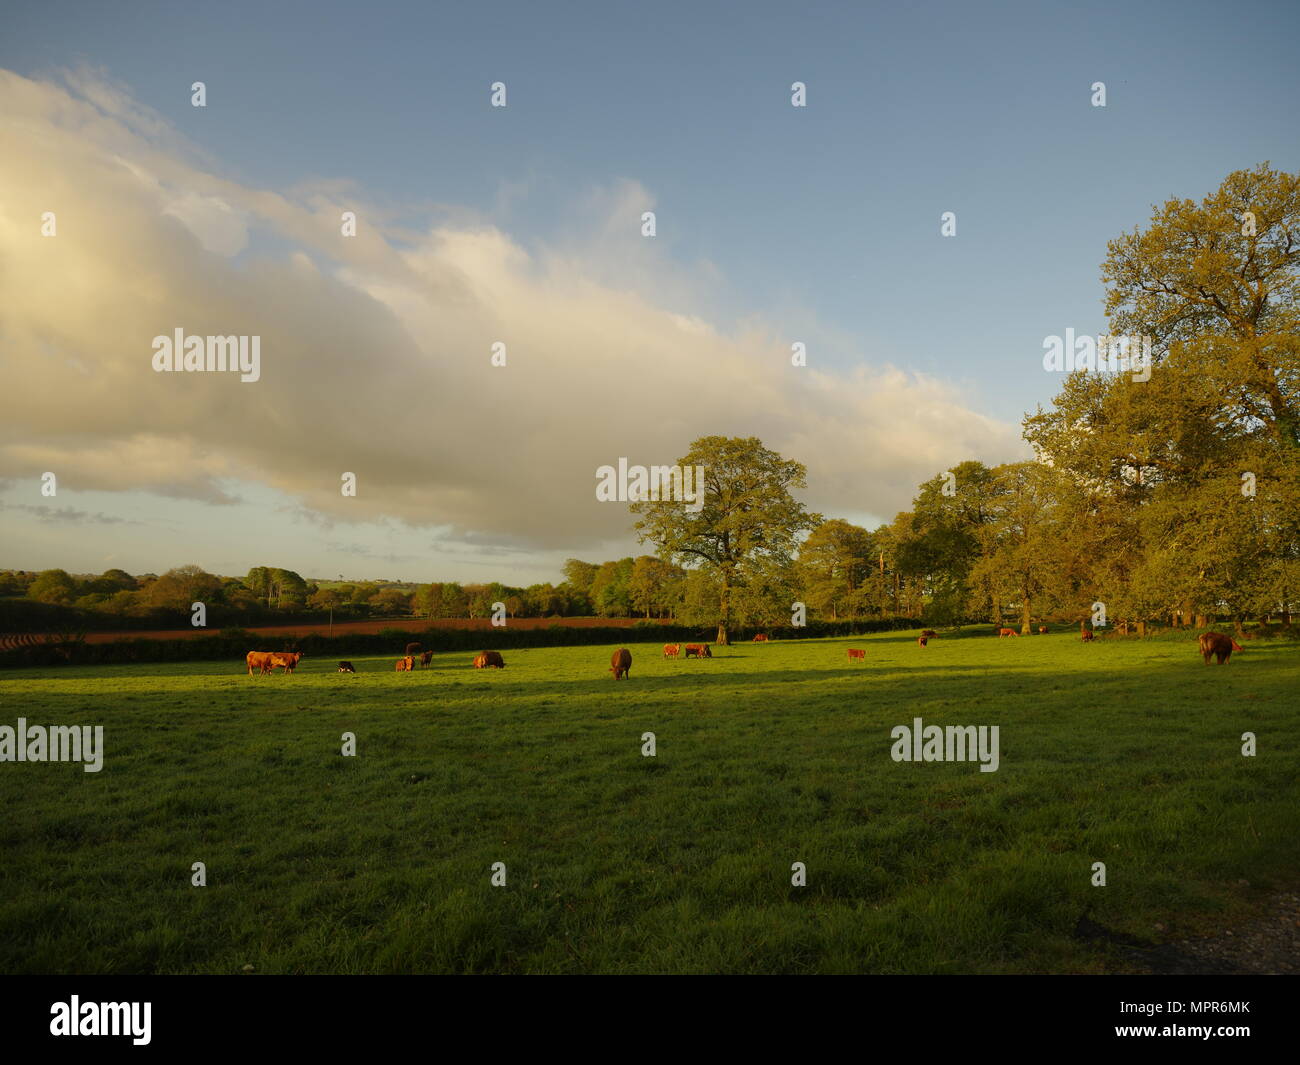 Le mucche al pascolo in un campo, la mattina presto luce, ombre sull'erba. Foto Stock